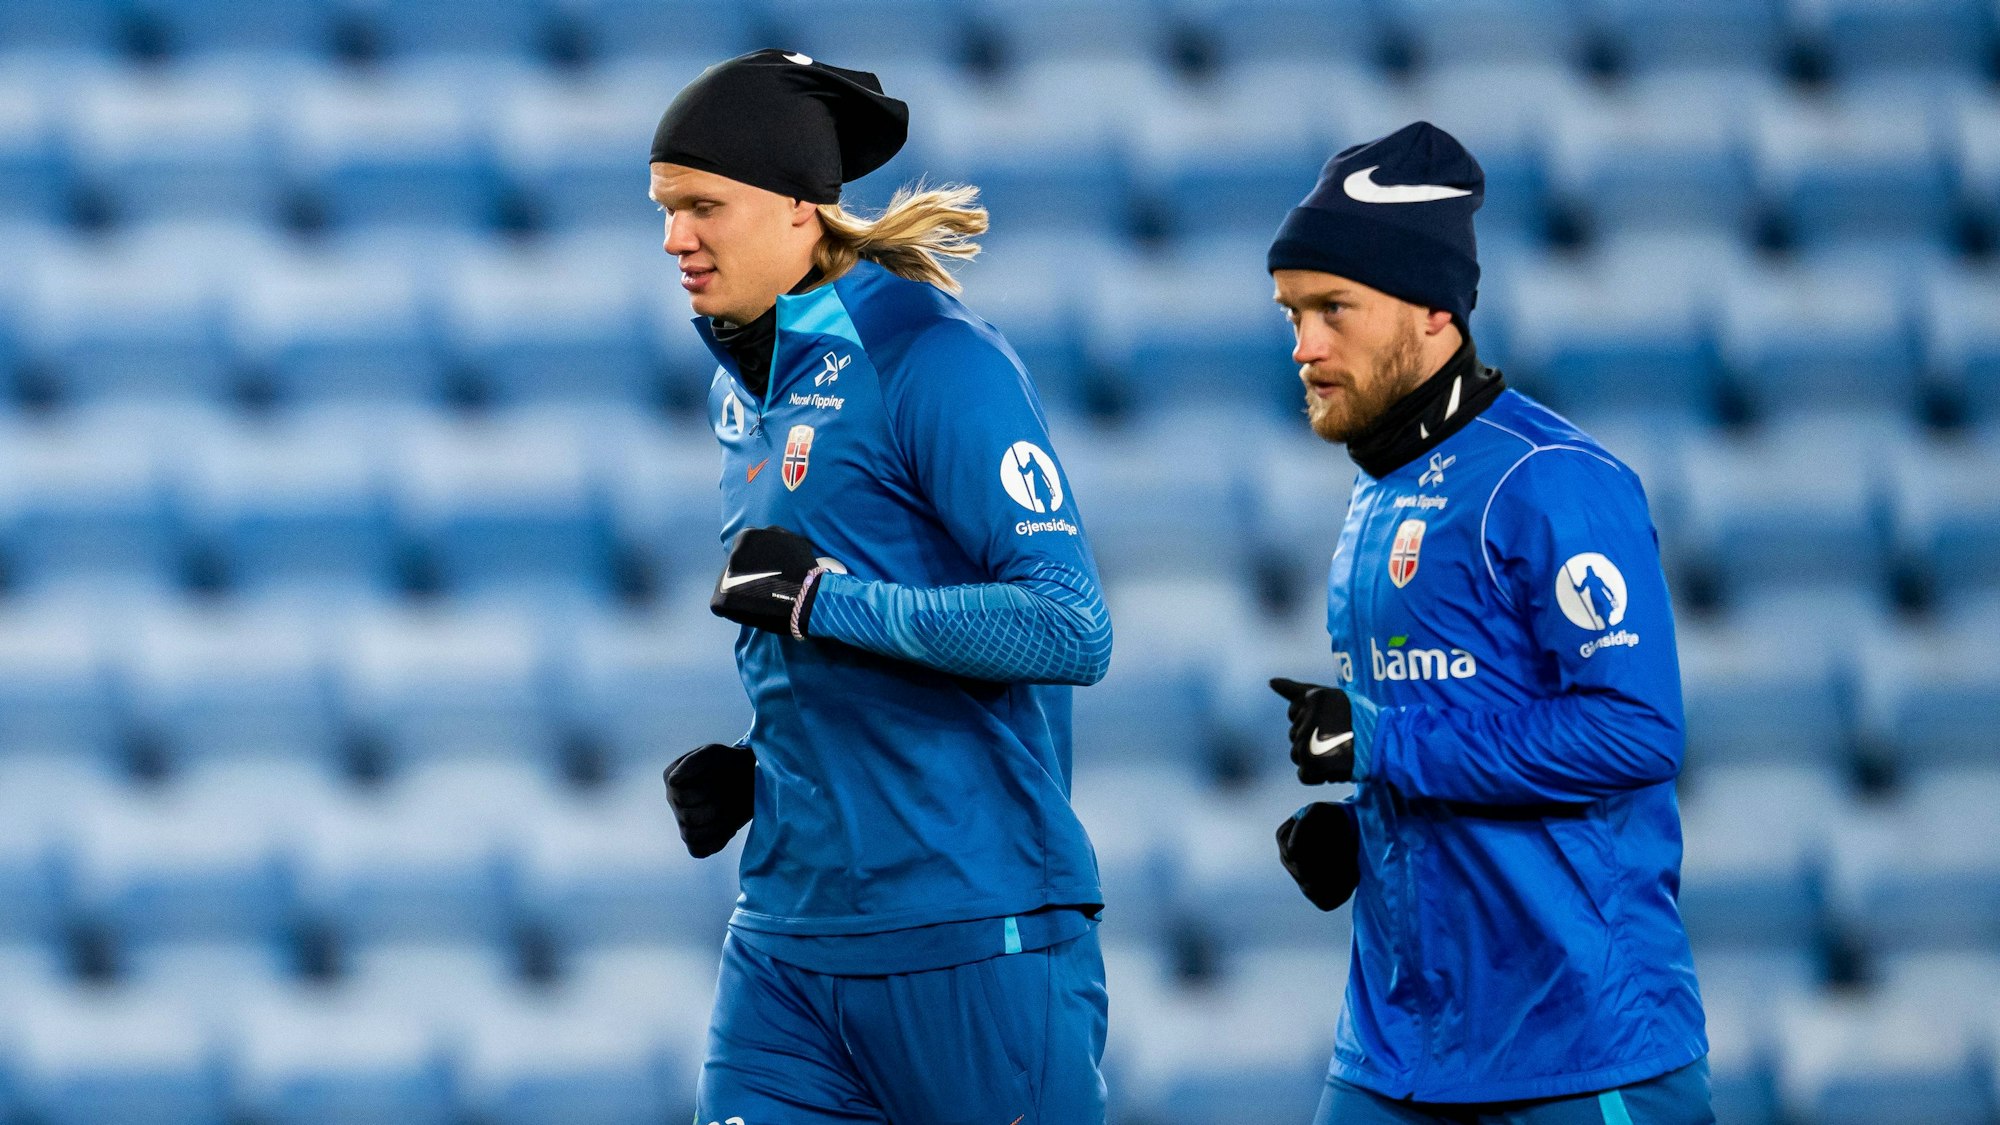 Bard Finne (r.) läuft beim Training der norwegischen Nationalmannschaft neben Superstar Erling Haaland. Beide tragen Handschuhe und eine Mütze.